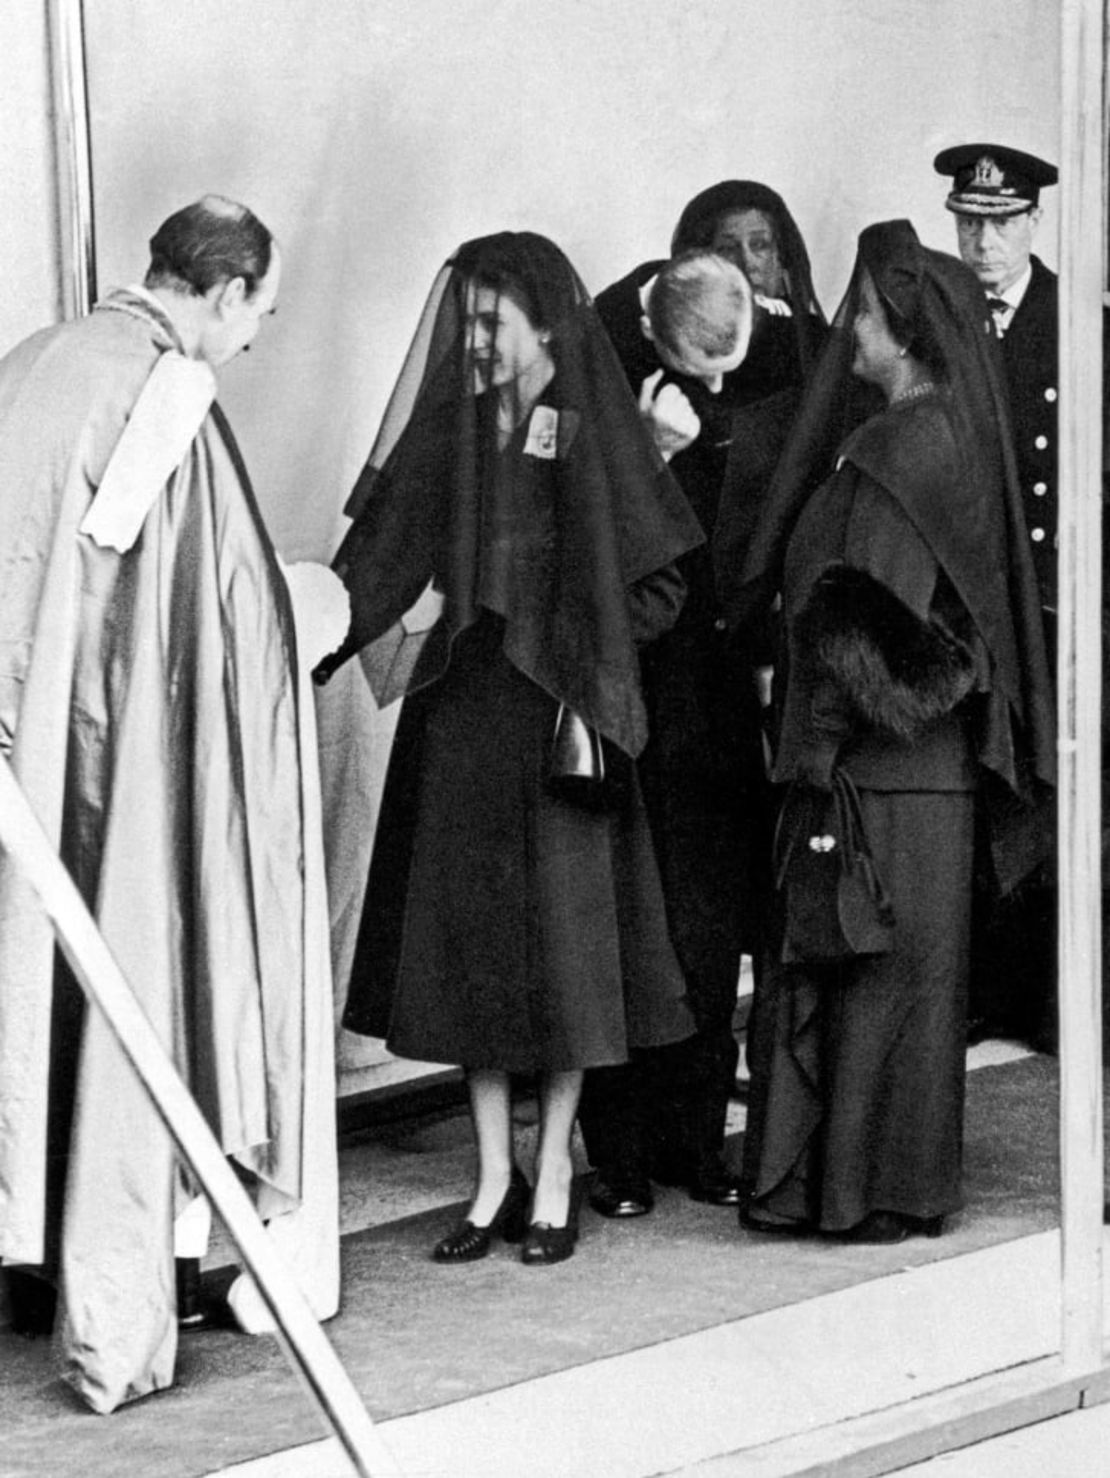 El código de vestimenta de los funerales reales ha sido durante mucho tiempo un símbolo de duelo y decoro. Isabel II llevó un largo velo tras el fallecimiento de su padre, el rey Jorge VI. Crédito: Daily Mirror/Mirrorpix/Getty Images